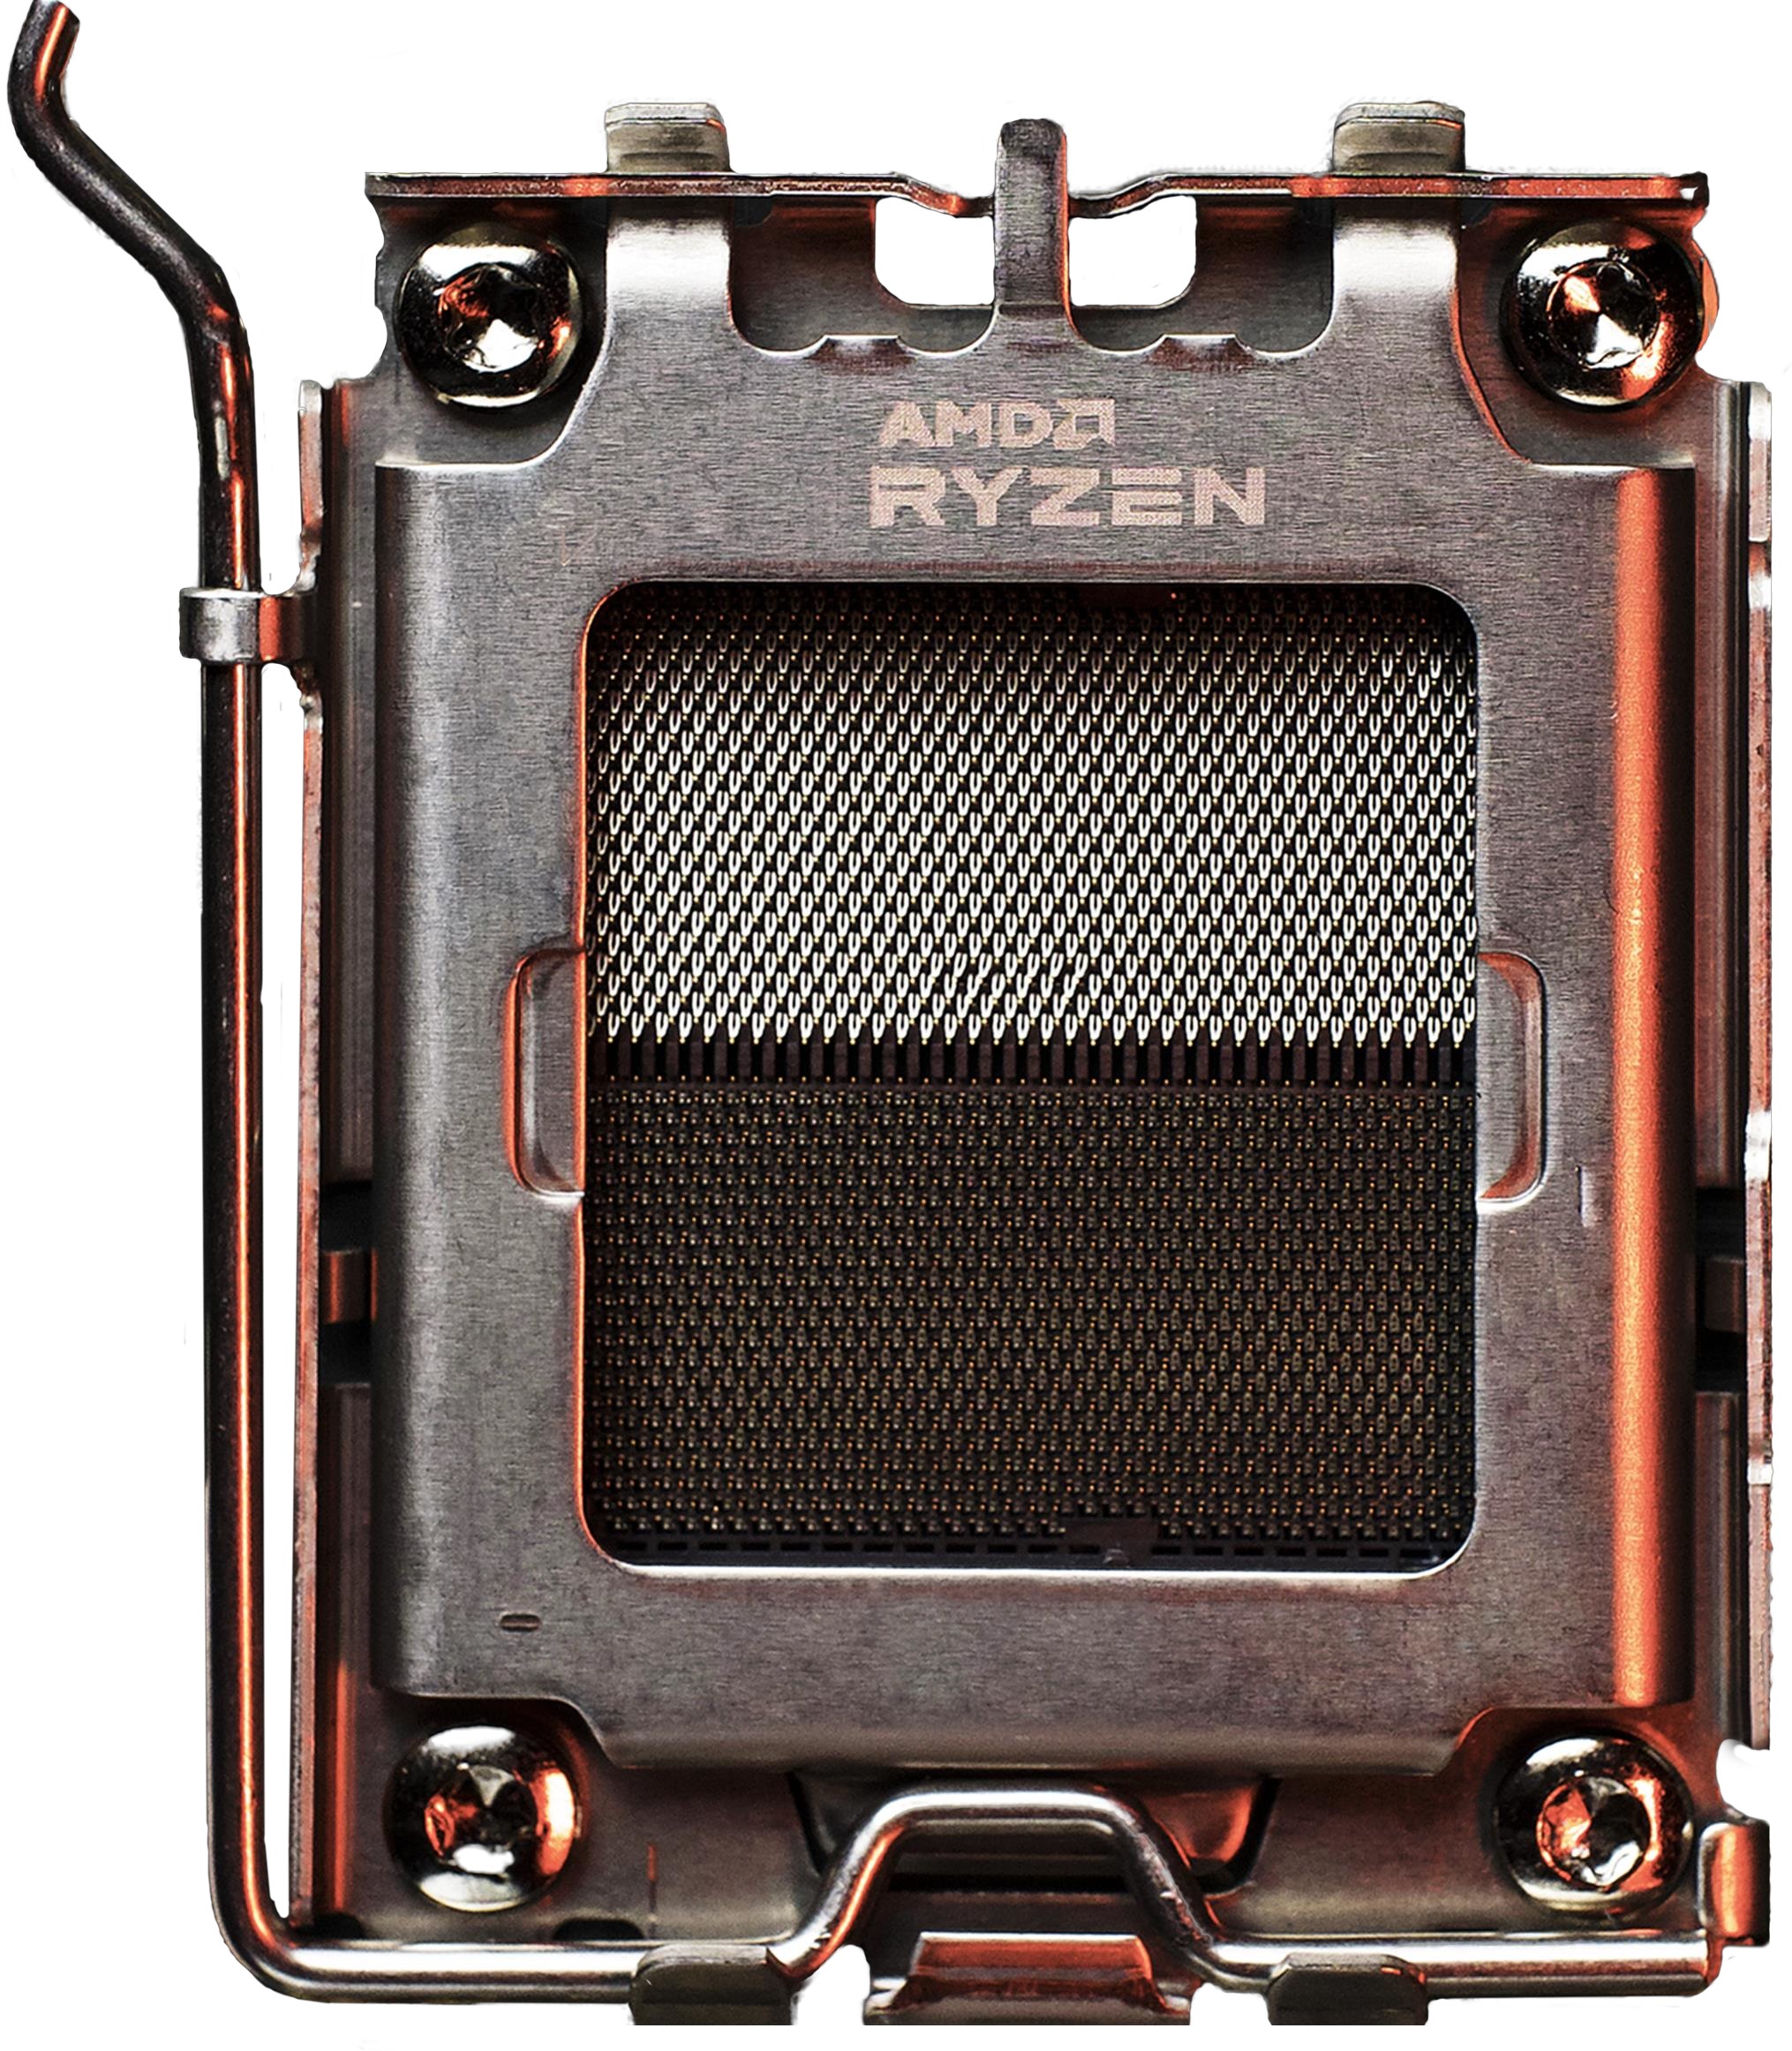 Meet the New AMD Socket AM5 Platform